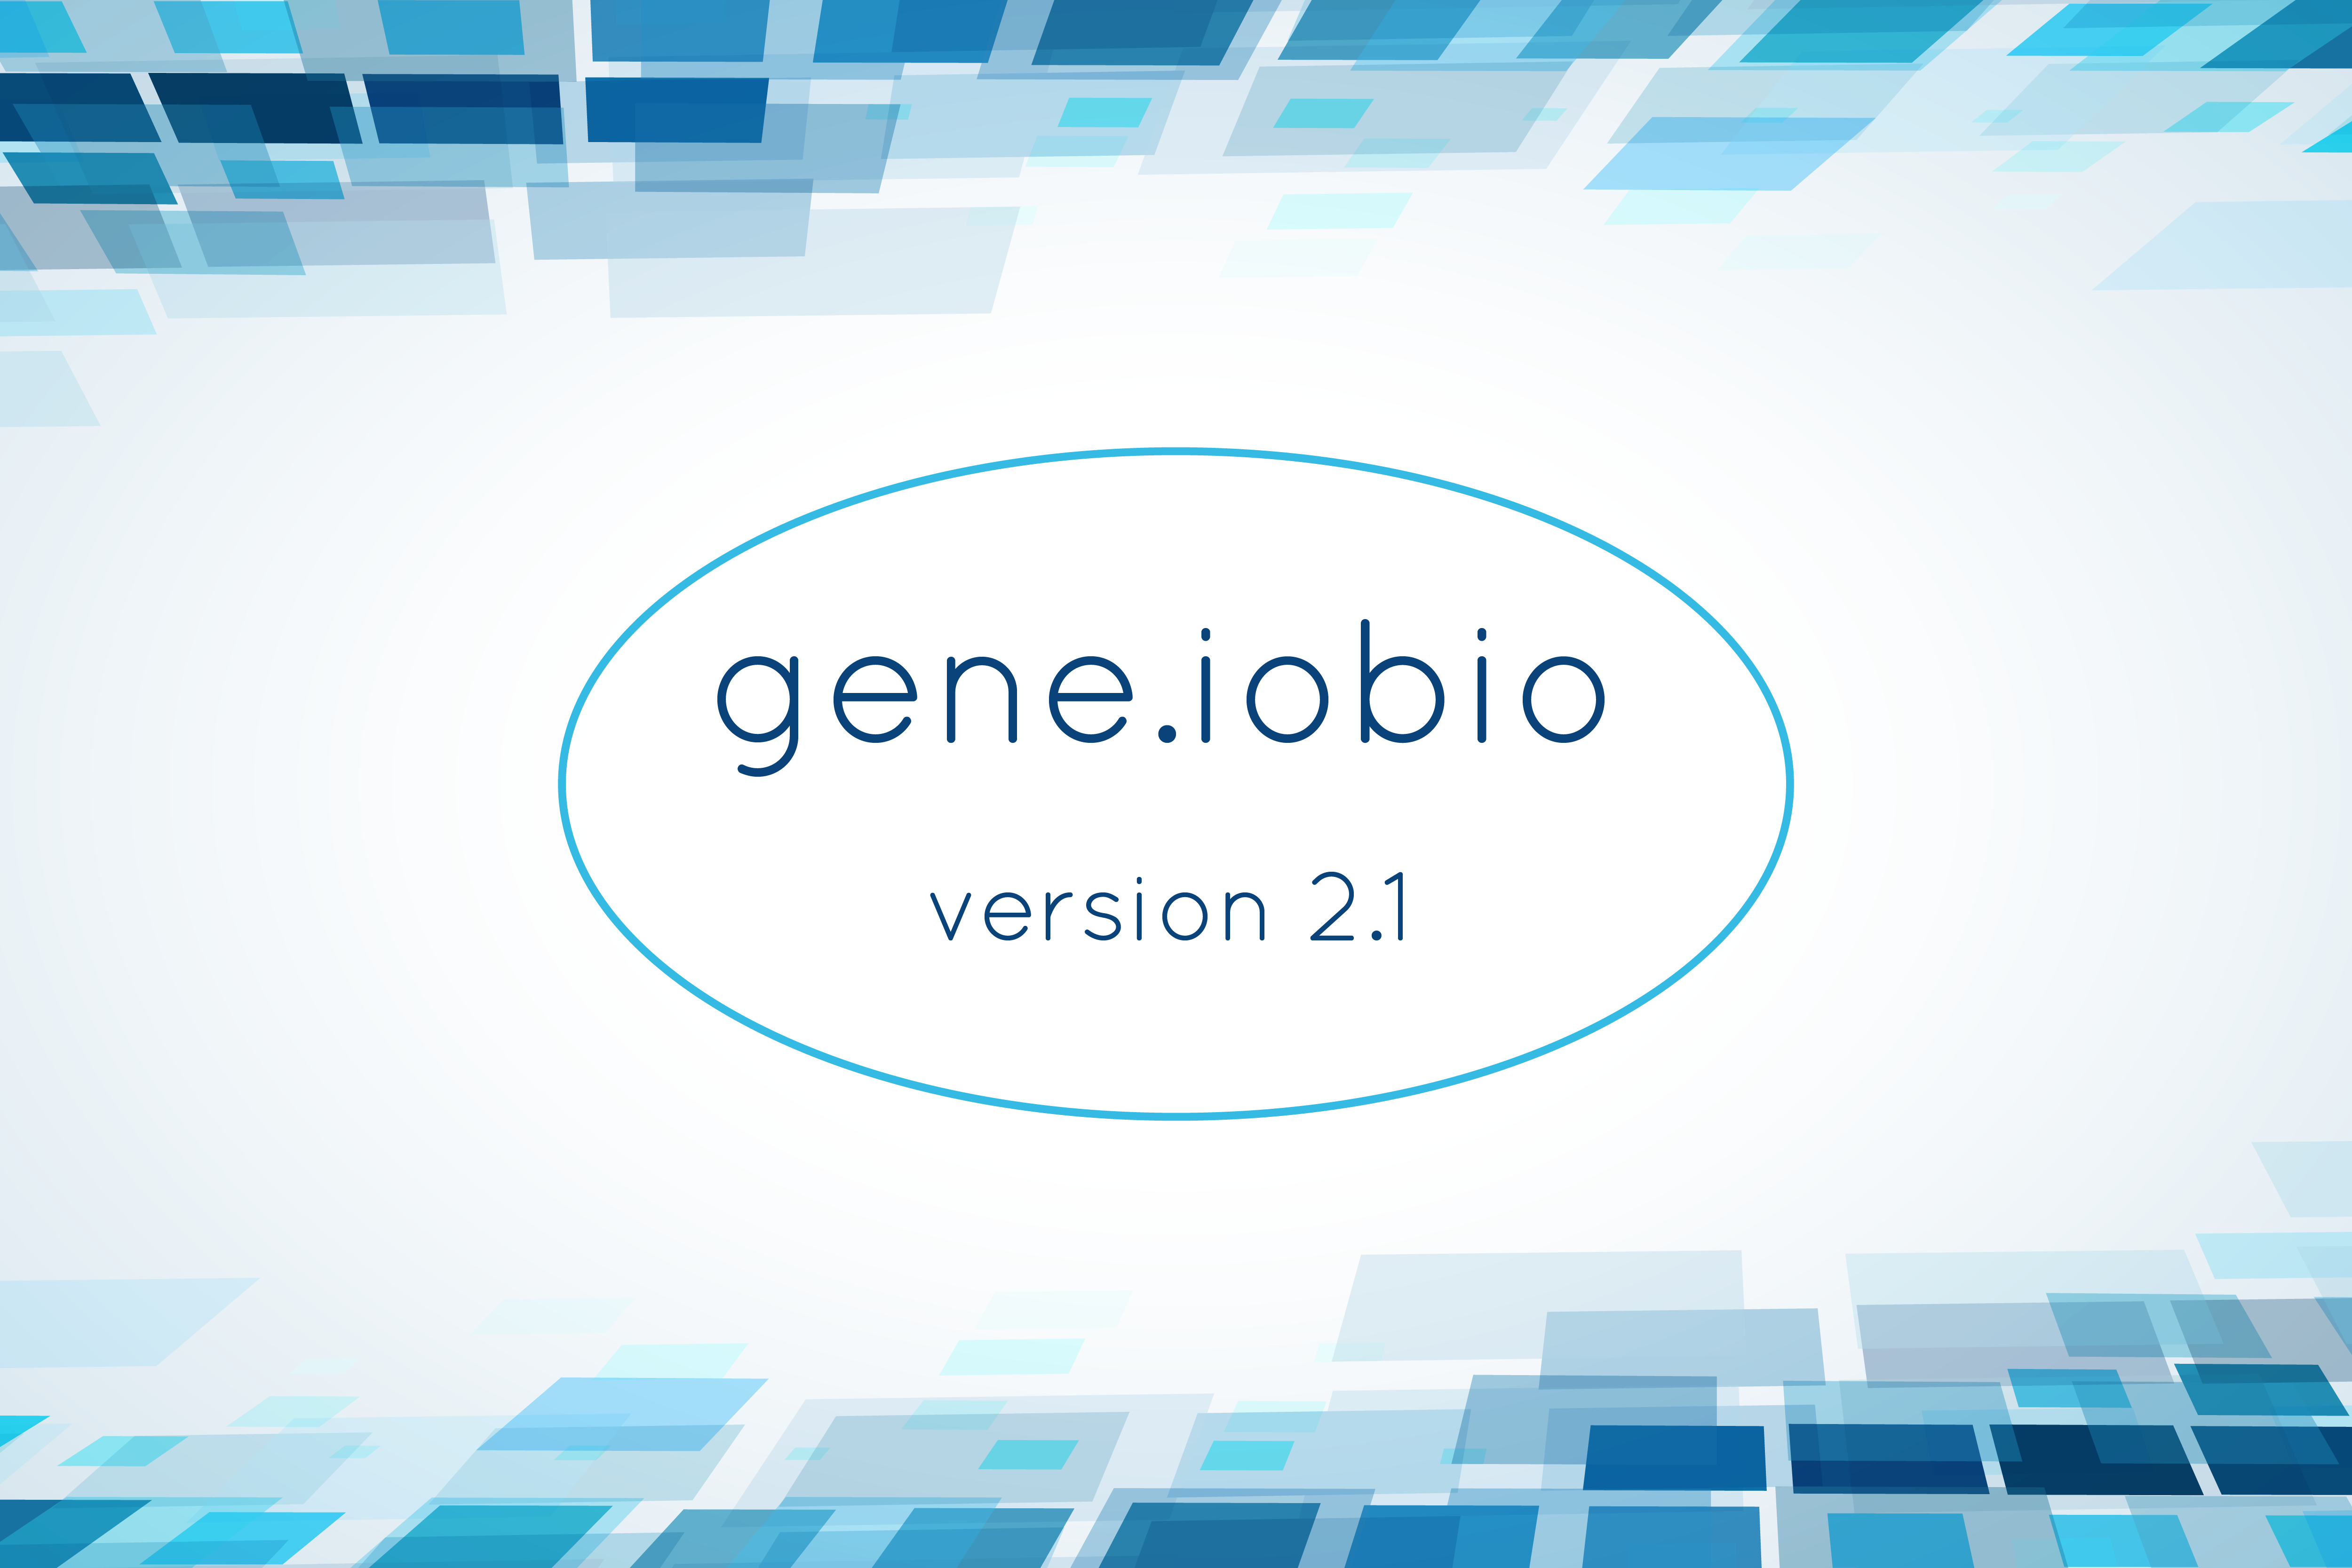 Gene.iobio version 2.1